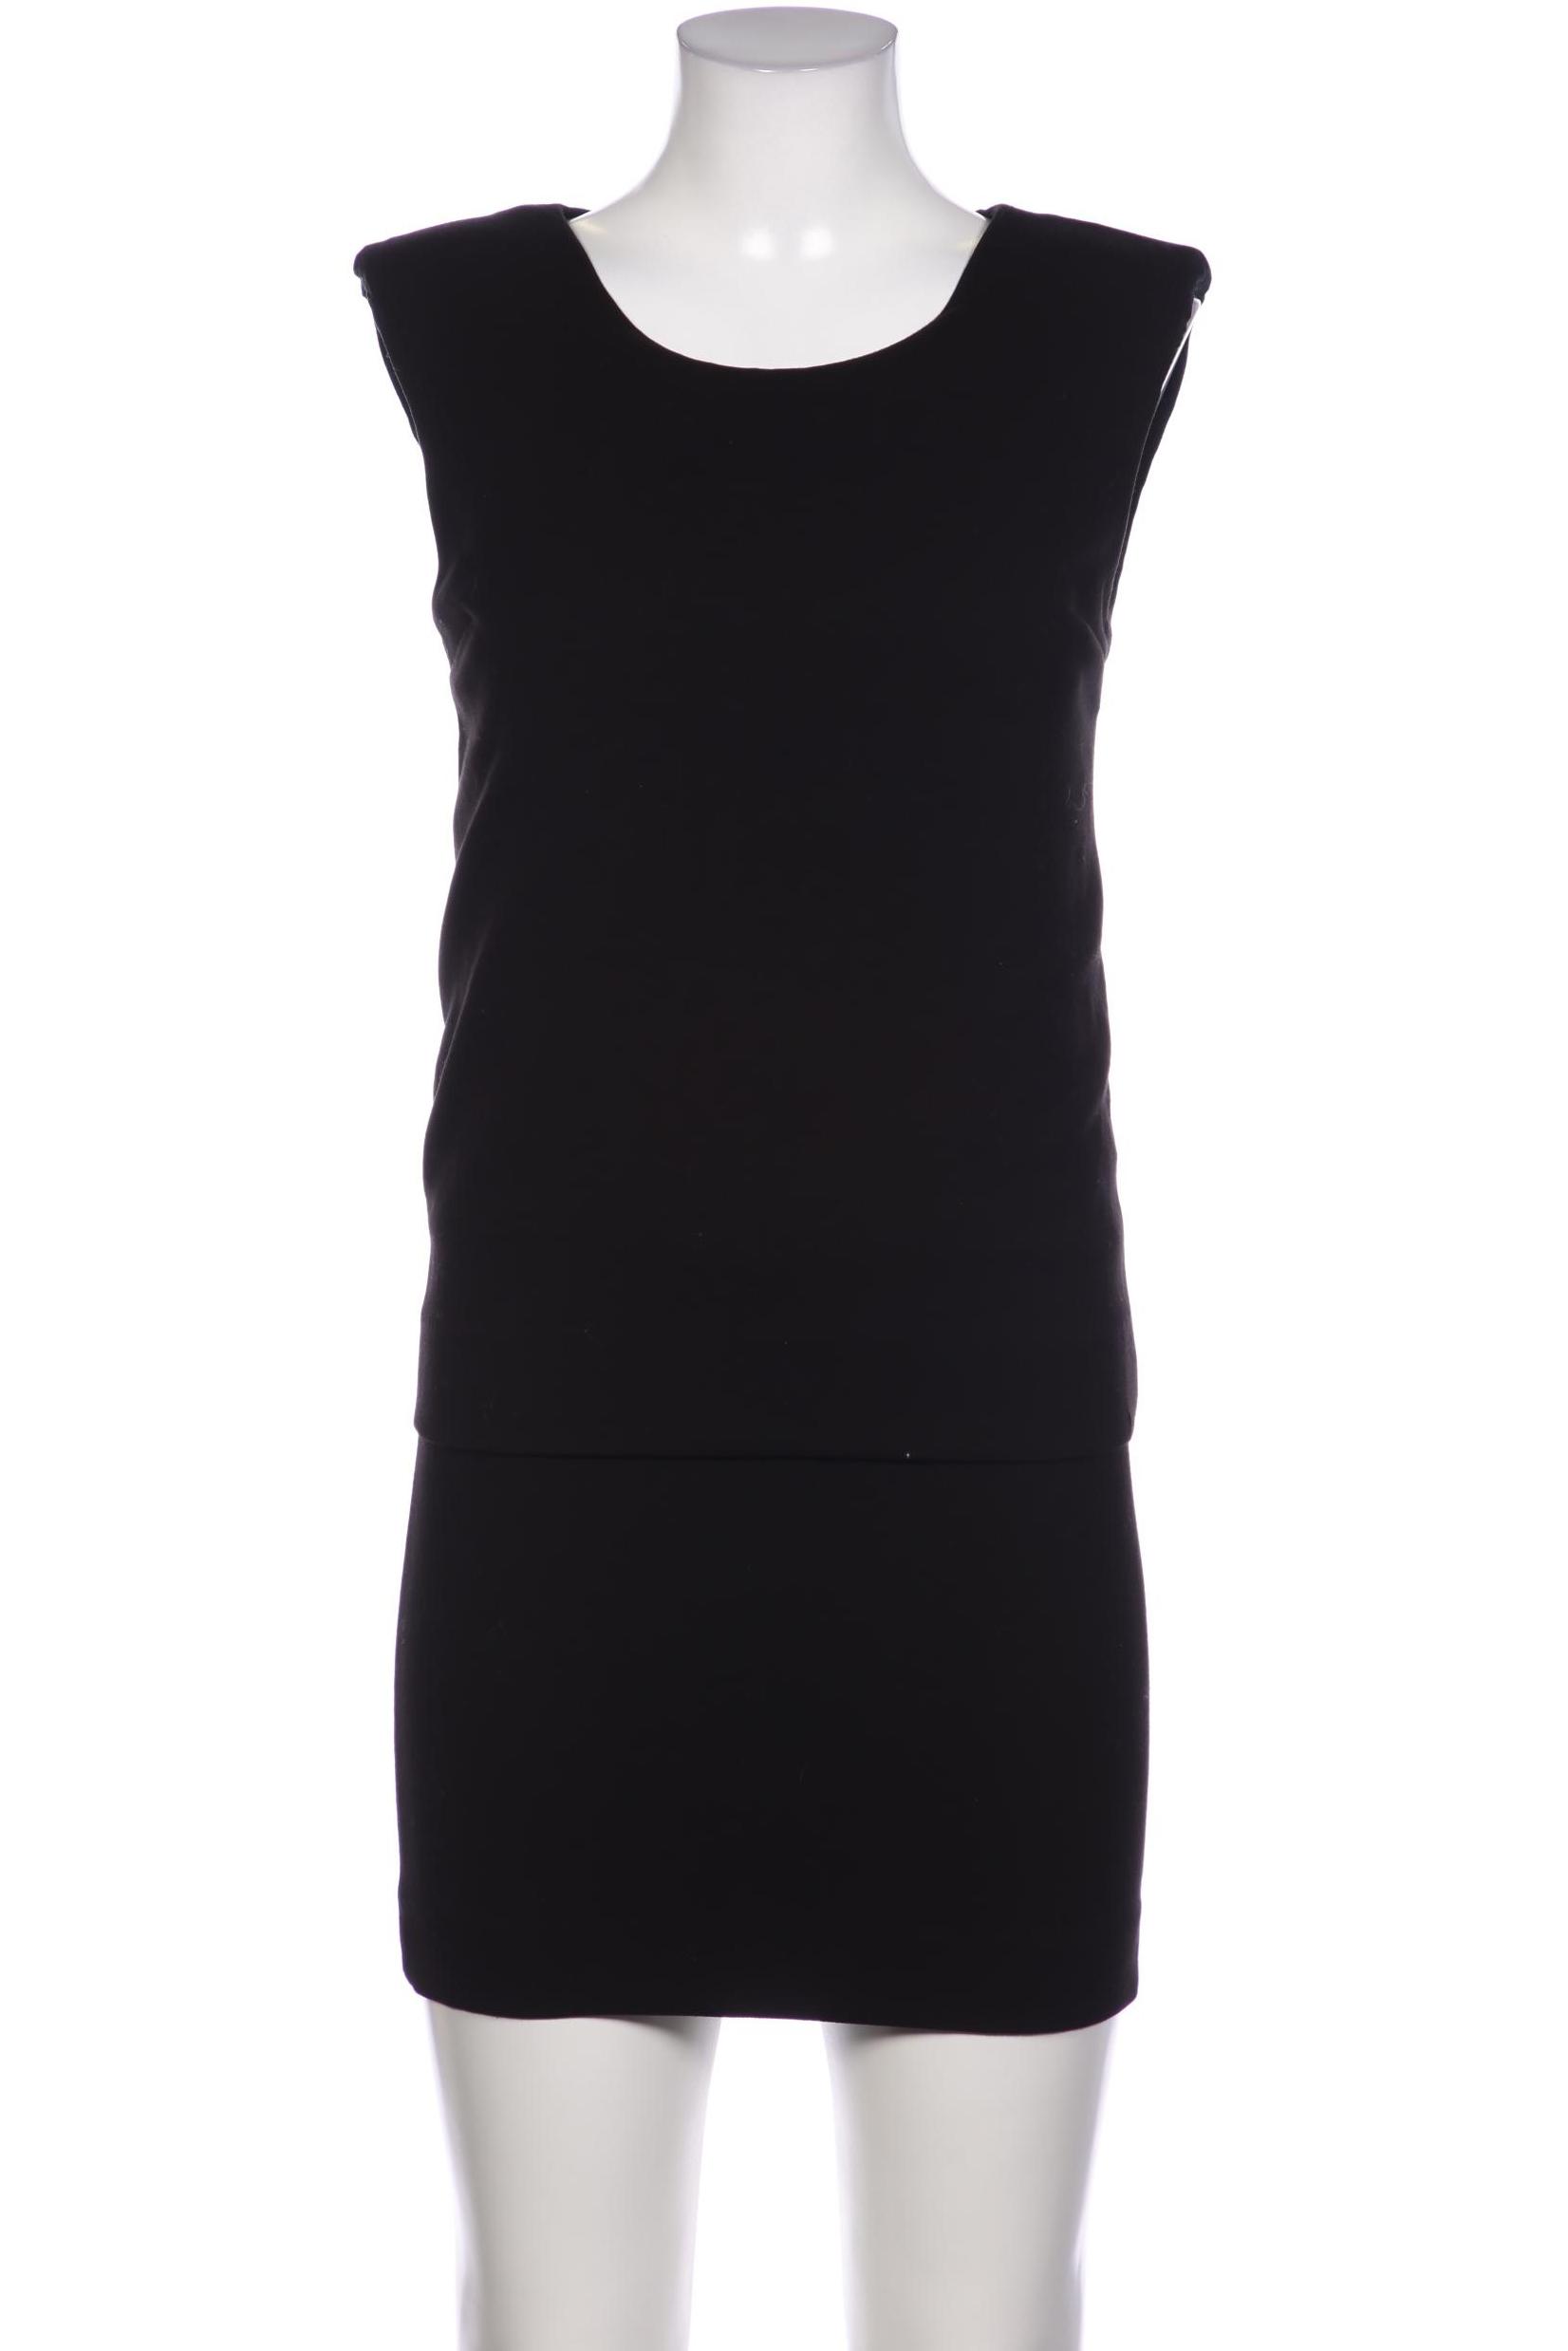 Sandro Damen Kleid, schwarz von sandro